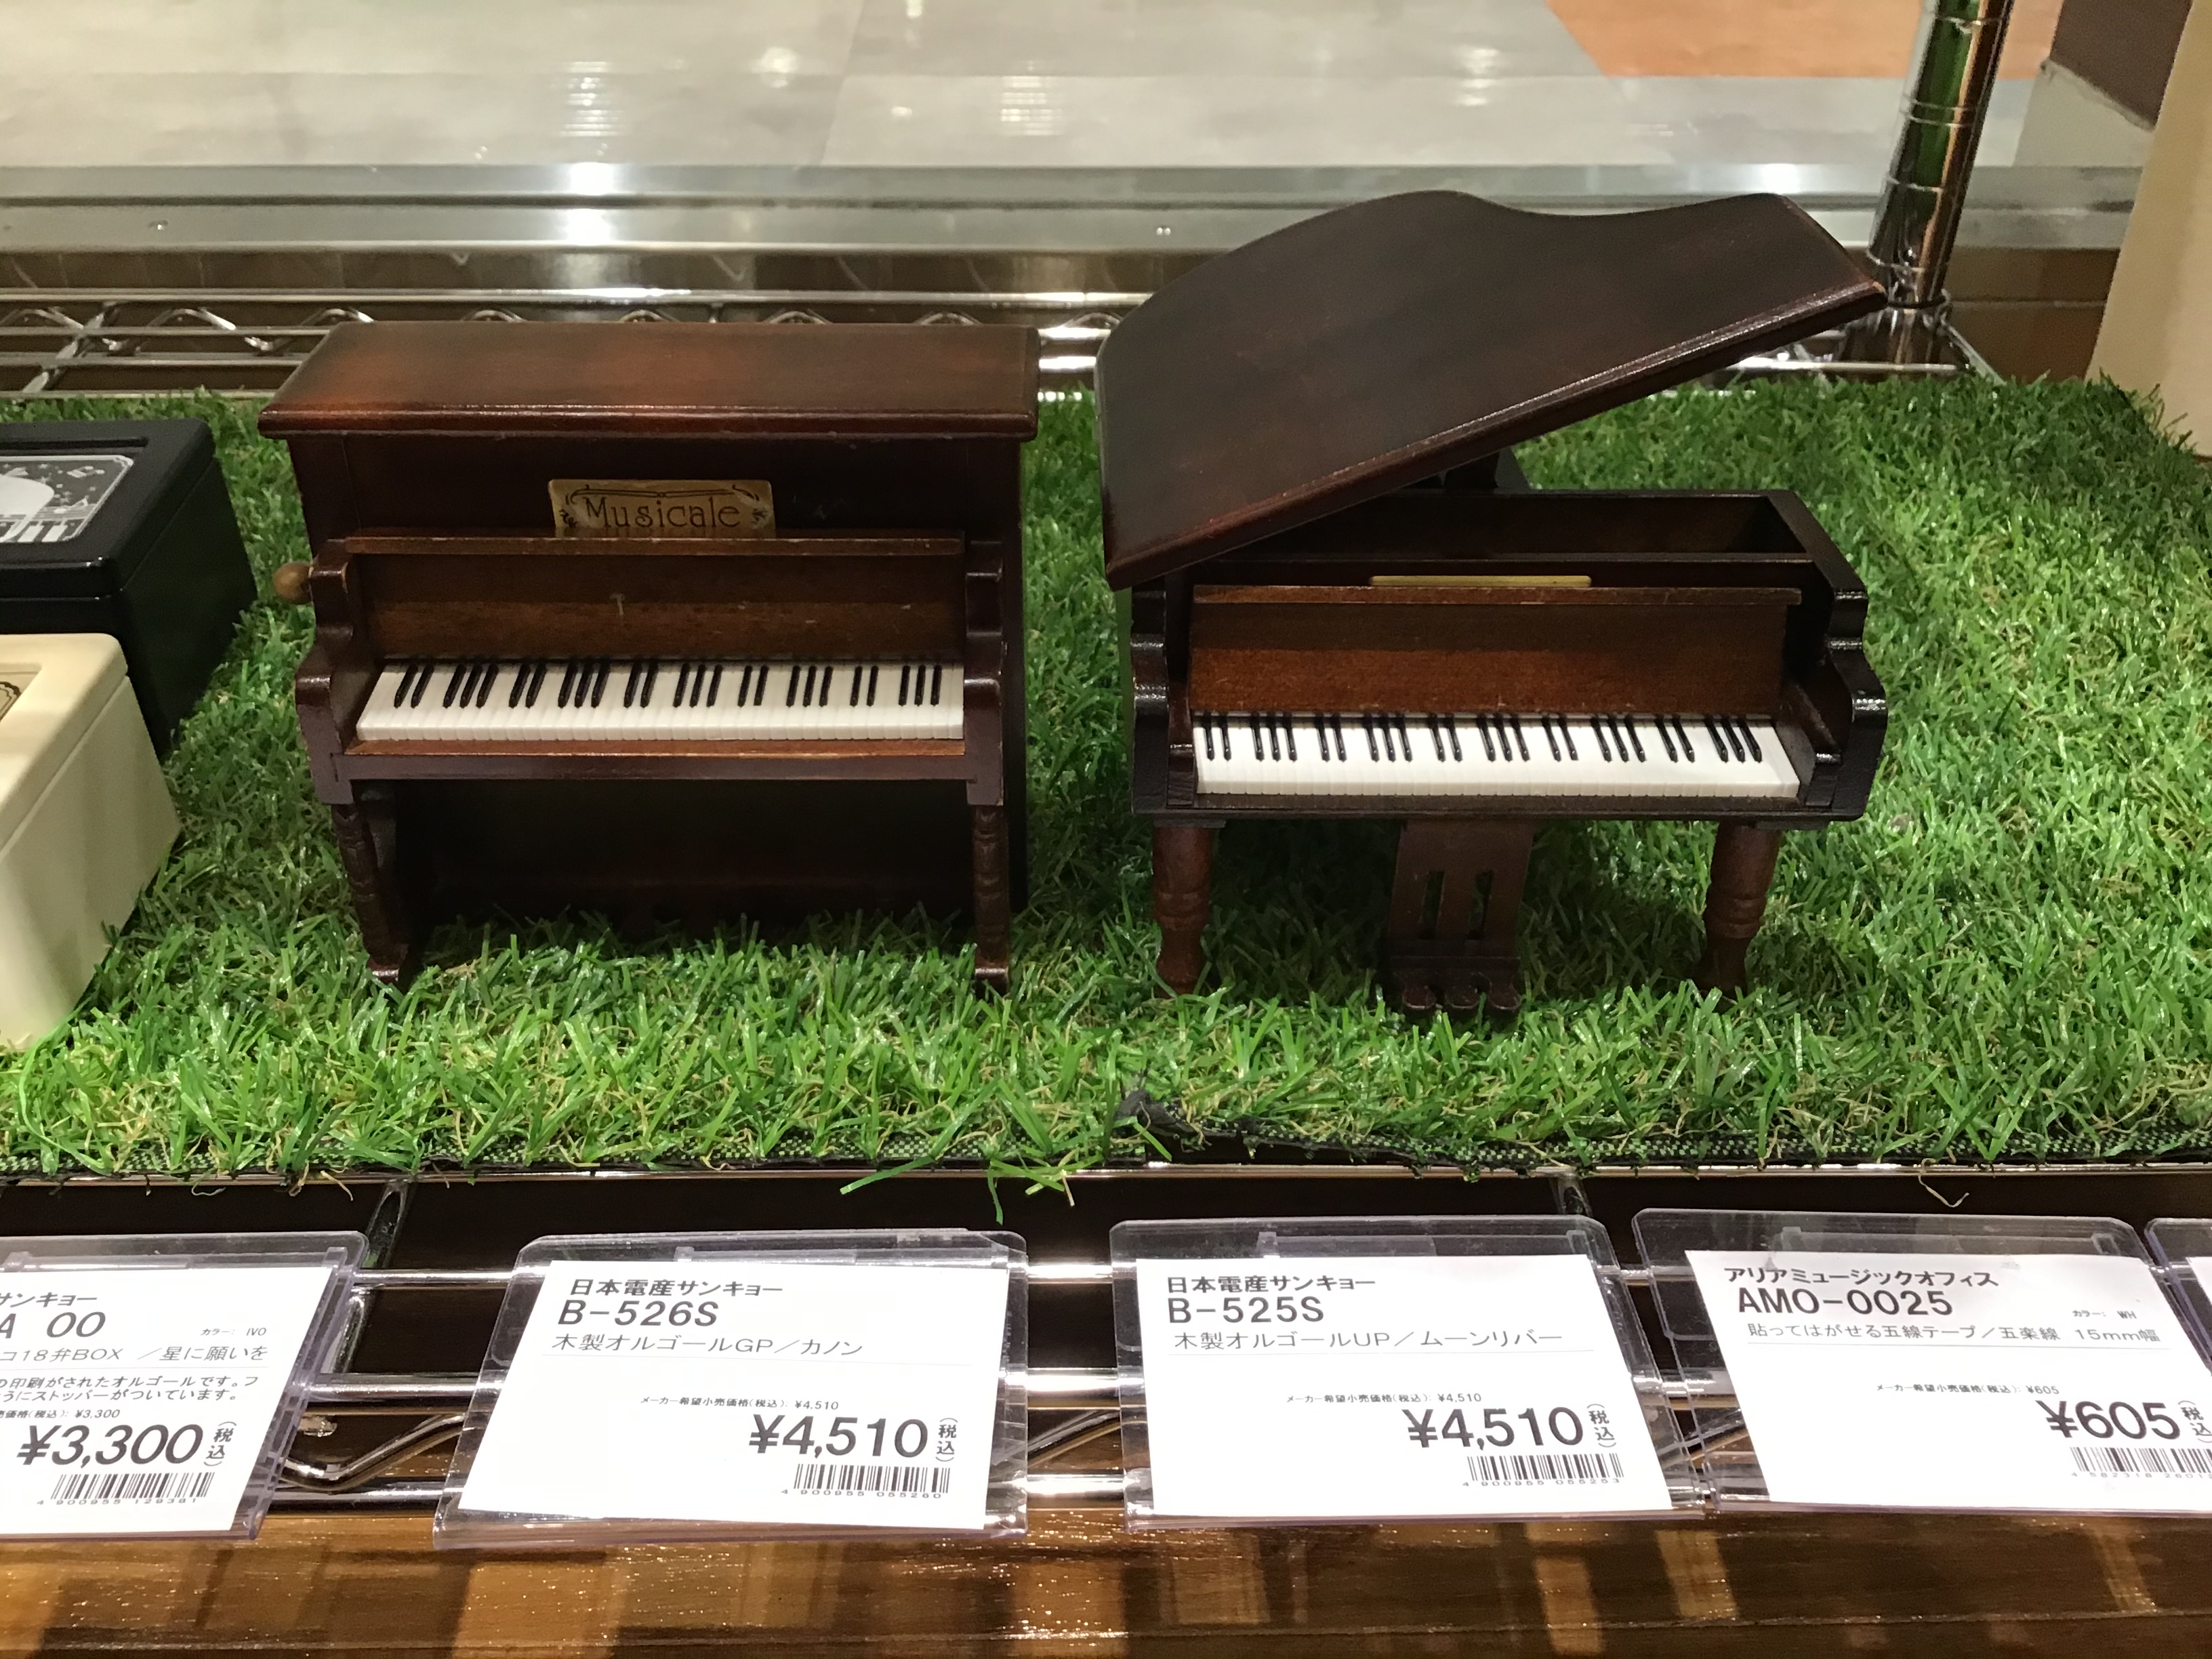 皆さんこんにちは、雑貨担当の山下です。今回和泉店にオルゴールが入荷致しました！是非ご来店頂き手に取って見て下さい。 *木製アンティークオルゴール ナチュラル感が人気のミニアンティーク木製シリーズで、グランドピアノとアップライトピアノの2点を展示しております。 |*メーカー名|*型名|*価格(税込)| […]